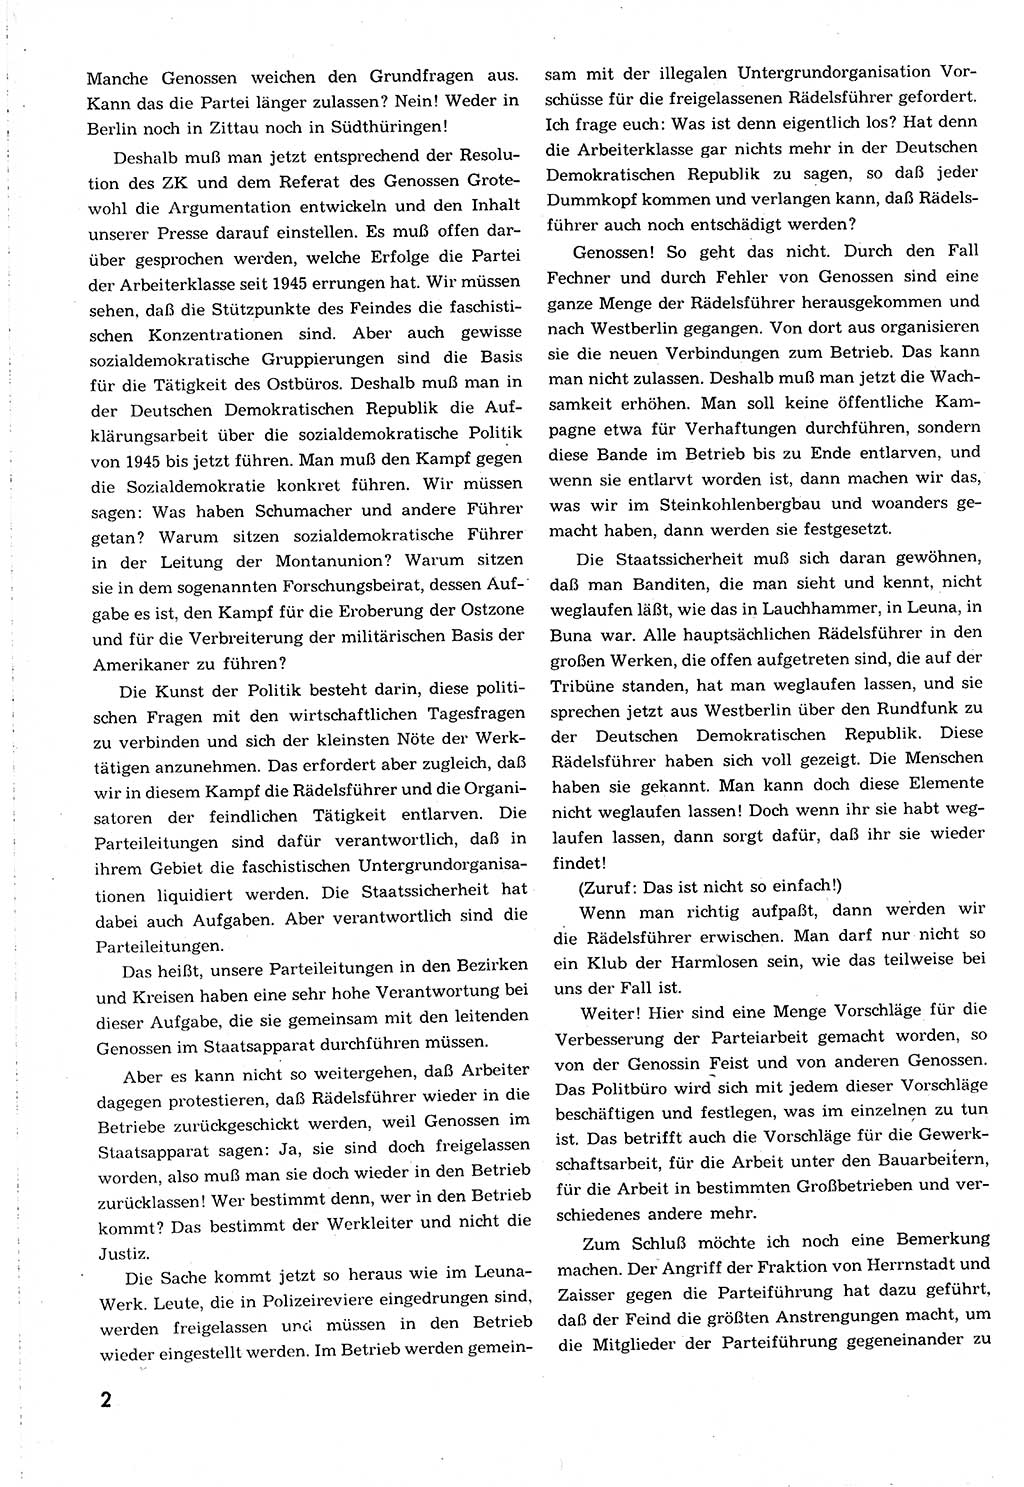 Neuer Weg (NW), Organ des Zentralkomitees (ZK) [Sozialistische Einheitspartei Deutschlands (SED)] für alle Parteiarbeiter, 8. Jahrgang [Deutsche Demokratische Republik (DDR)] 1953, Heft 14/2 (NW ZK SED DDR 1953, H. 14/2)